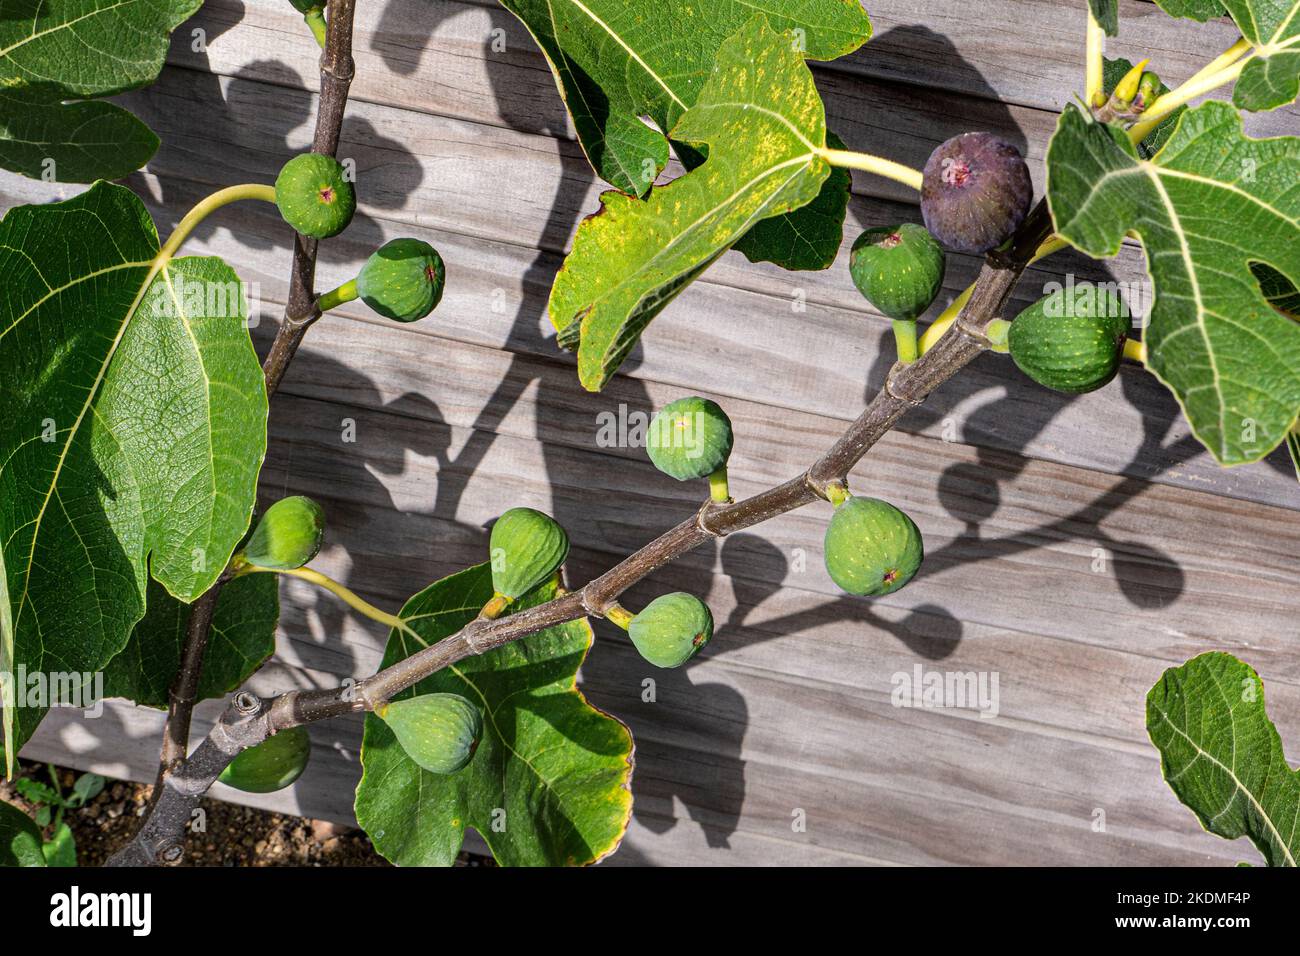 FIG Ficus carica 'Osborn's prolific' doux fruits rouges, pourpres ou bruns de la fin de l'été à l'automne famille Moraceae. Le ficus peut être à feuilles persistantes ou à feuilles caduques Banque D'Images